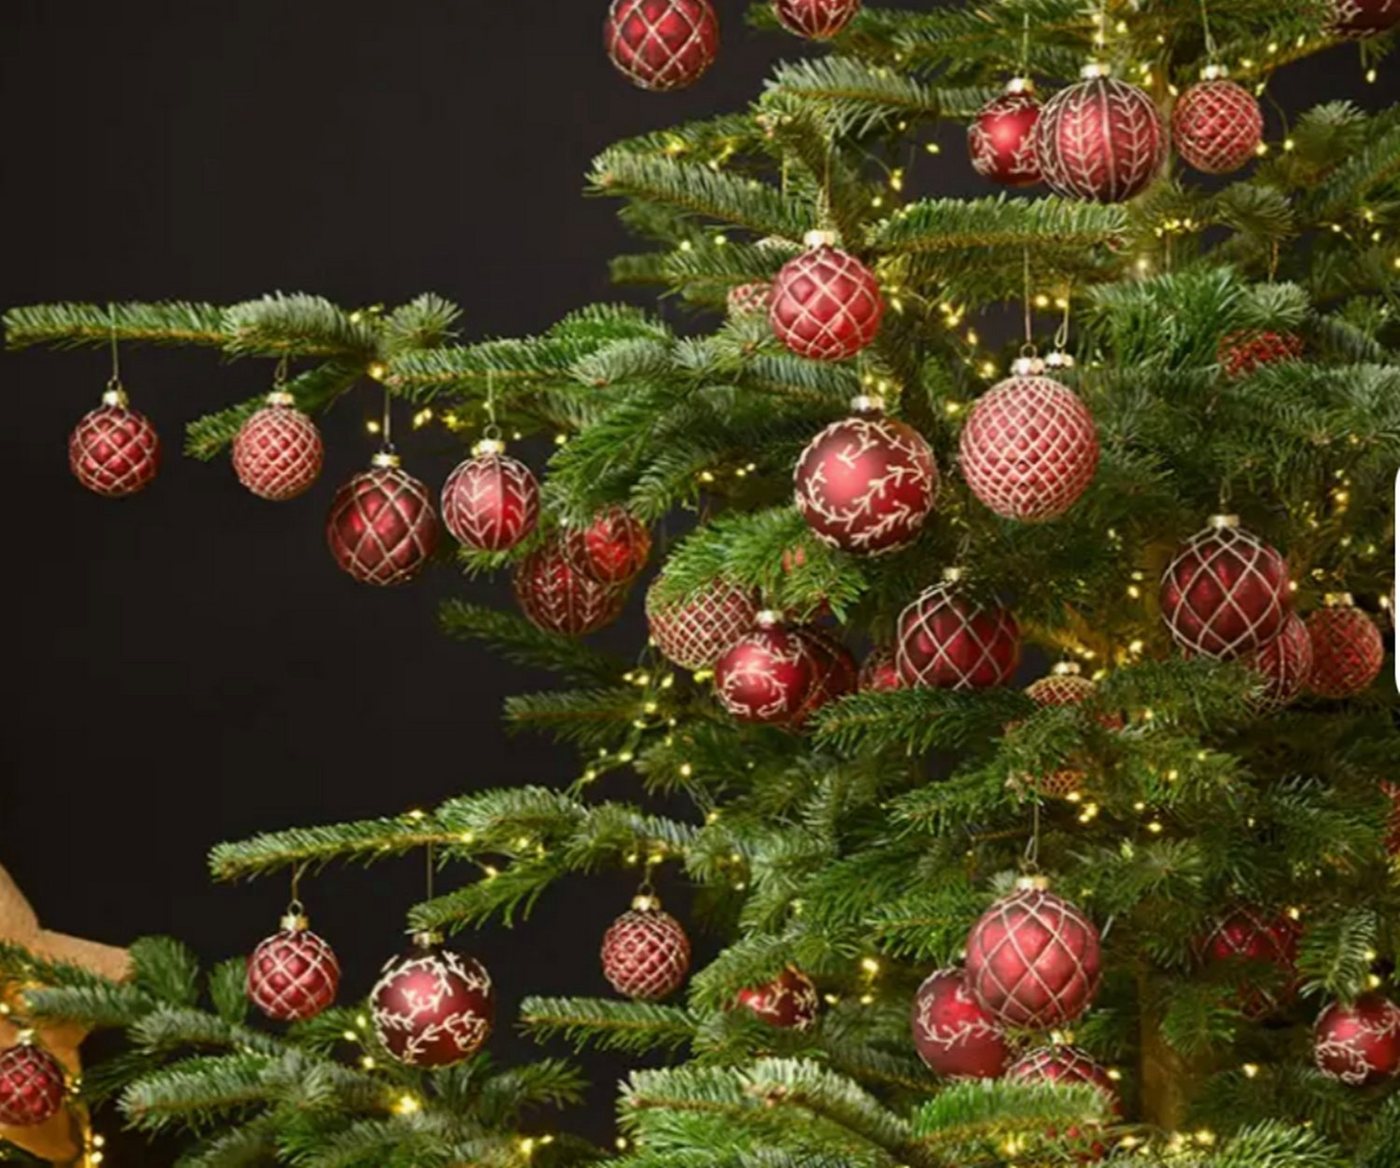 Taschen4life Weihnachtsbaumkugel Christbaumkugeln aus Glas im antik Landhaus Stil, 12 teiliges Set, 8x8x8cm, Advent und Weihnachten Deko von Taschen4life